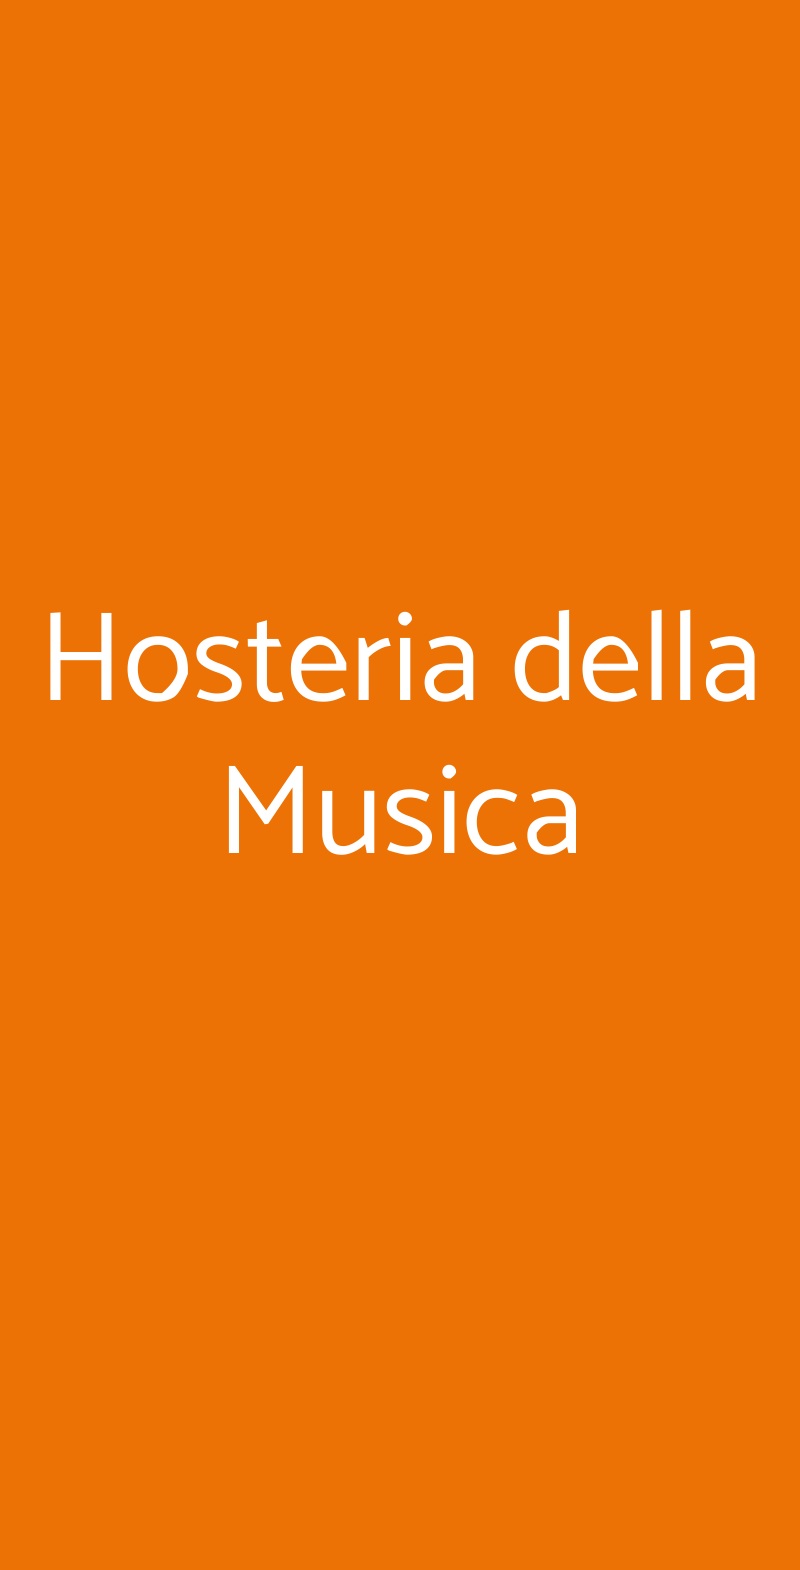 Hosteria della Musica Milano menù 1 pagina